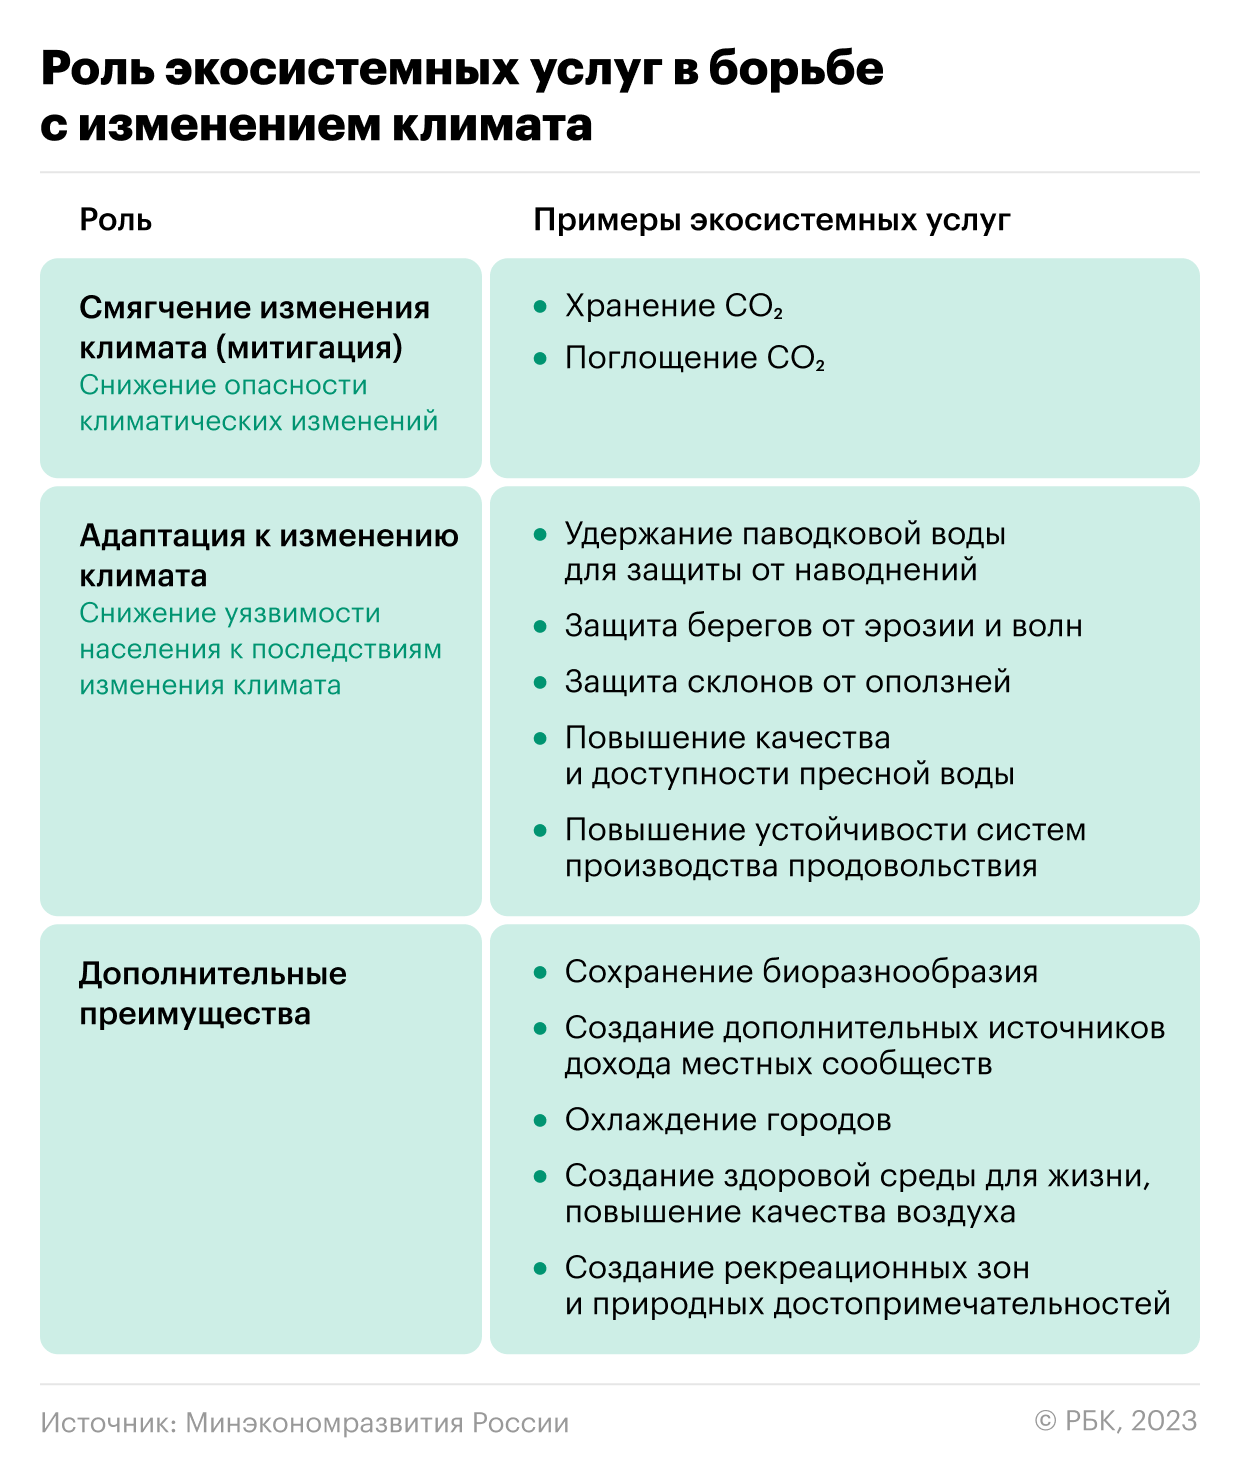 Как Россия может стать лидером в природно-климатических решениях